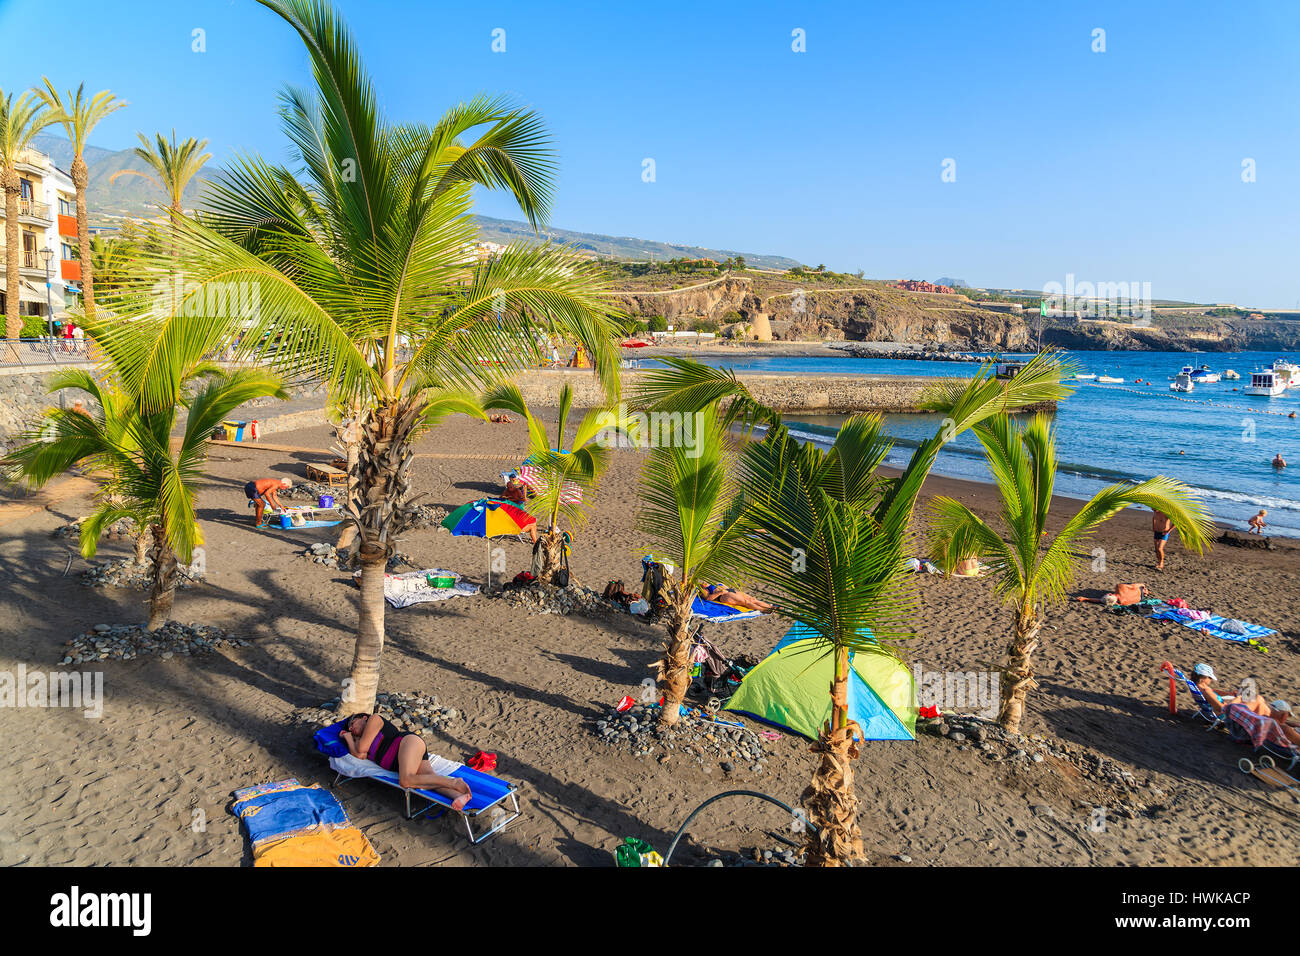 Plage de SAN JUAN, l'ÎLE DE TENERIFE - NOV 15, 2015 : les gens se détendre sur une plage magnifique avec des palmiers à San Juan, ville côtière de l'île de Ténérife, Espagne. Banque D'Images